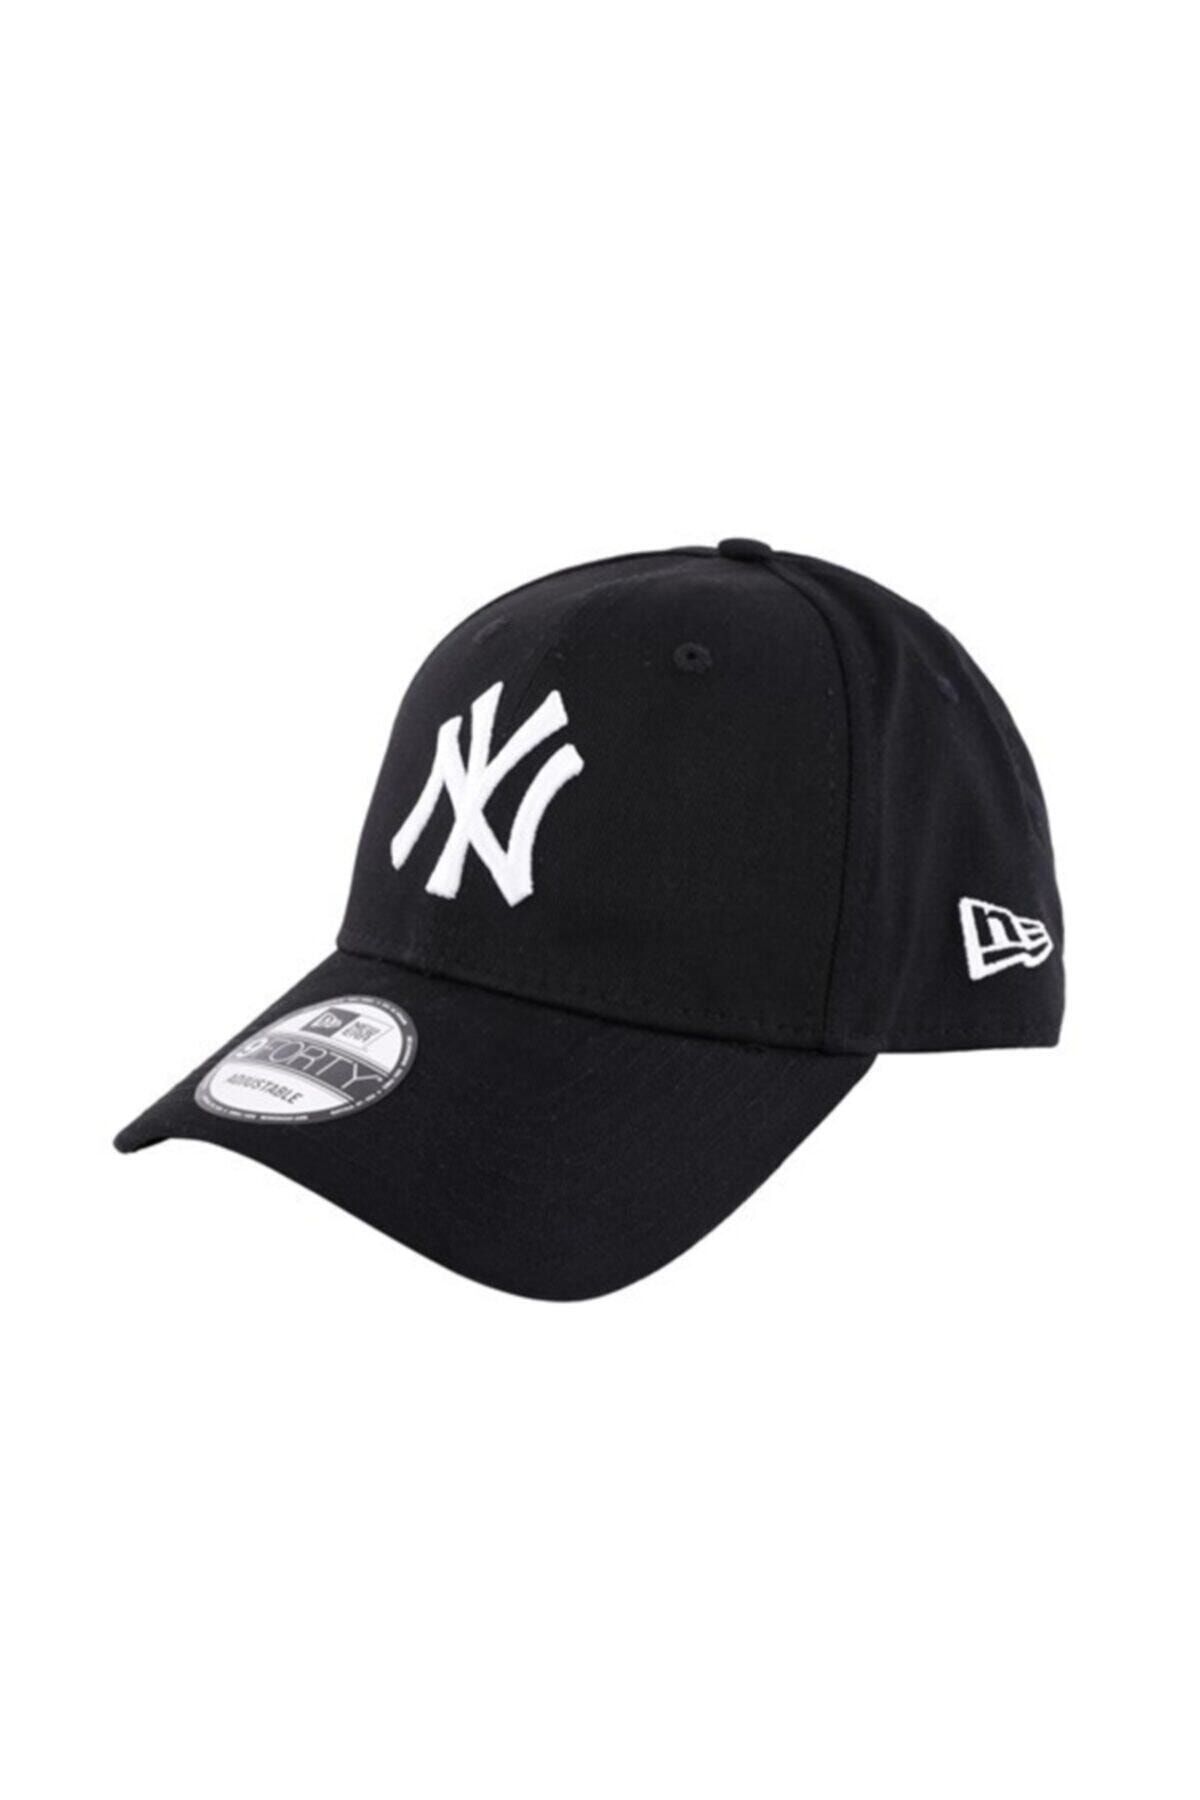 NEW ERA Şapka 9forty League Basic New York Yankees Black optic White